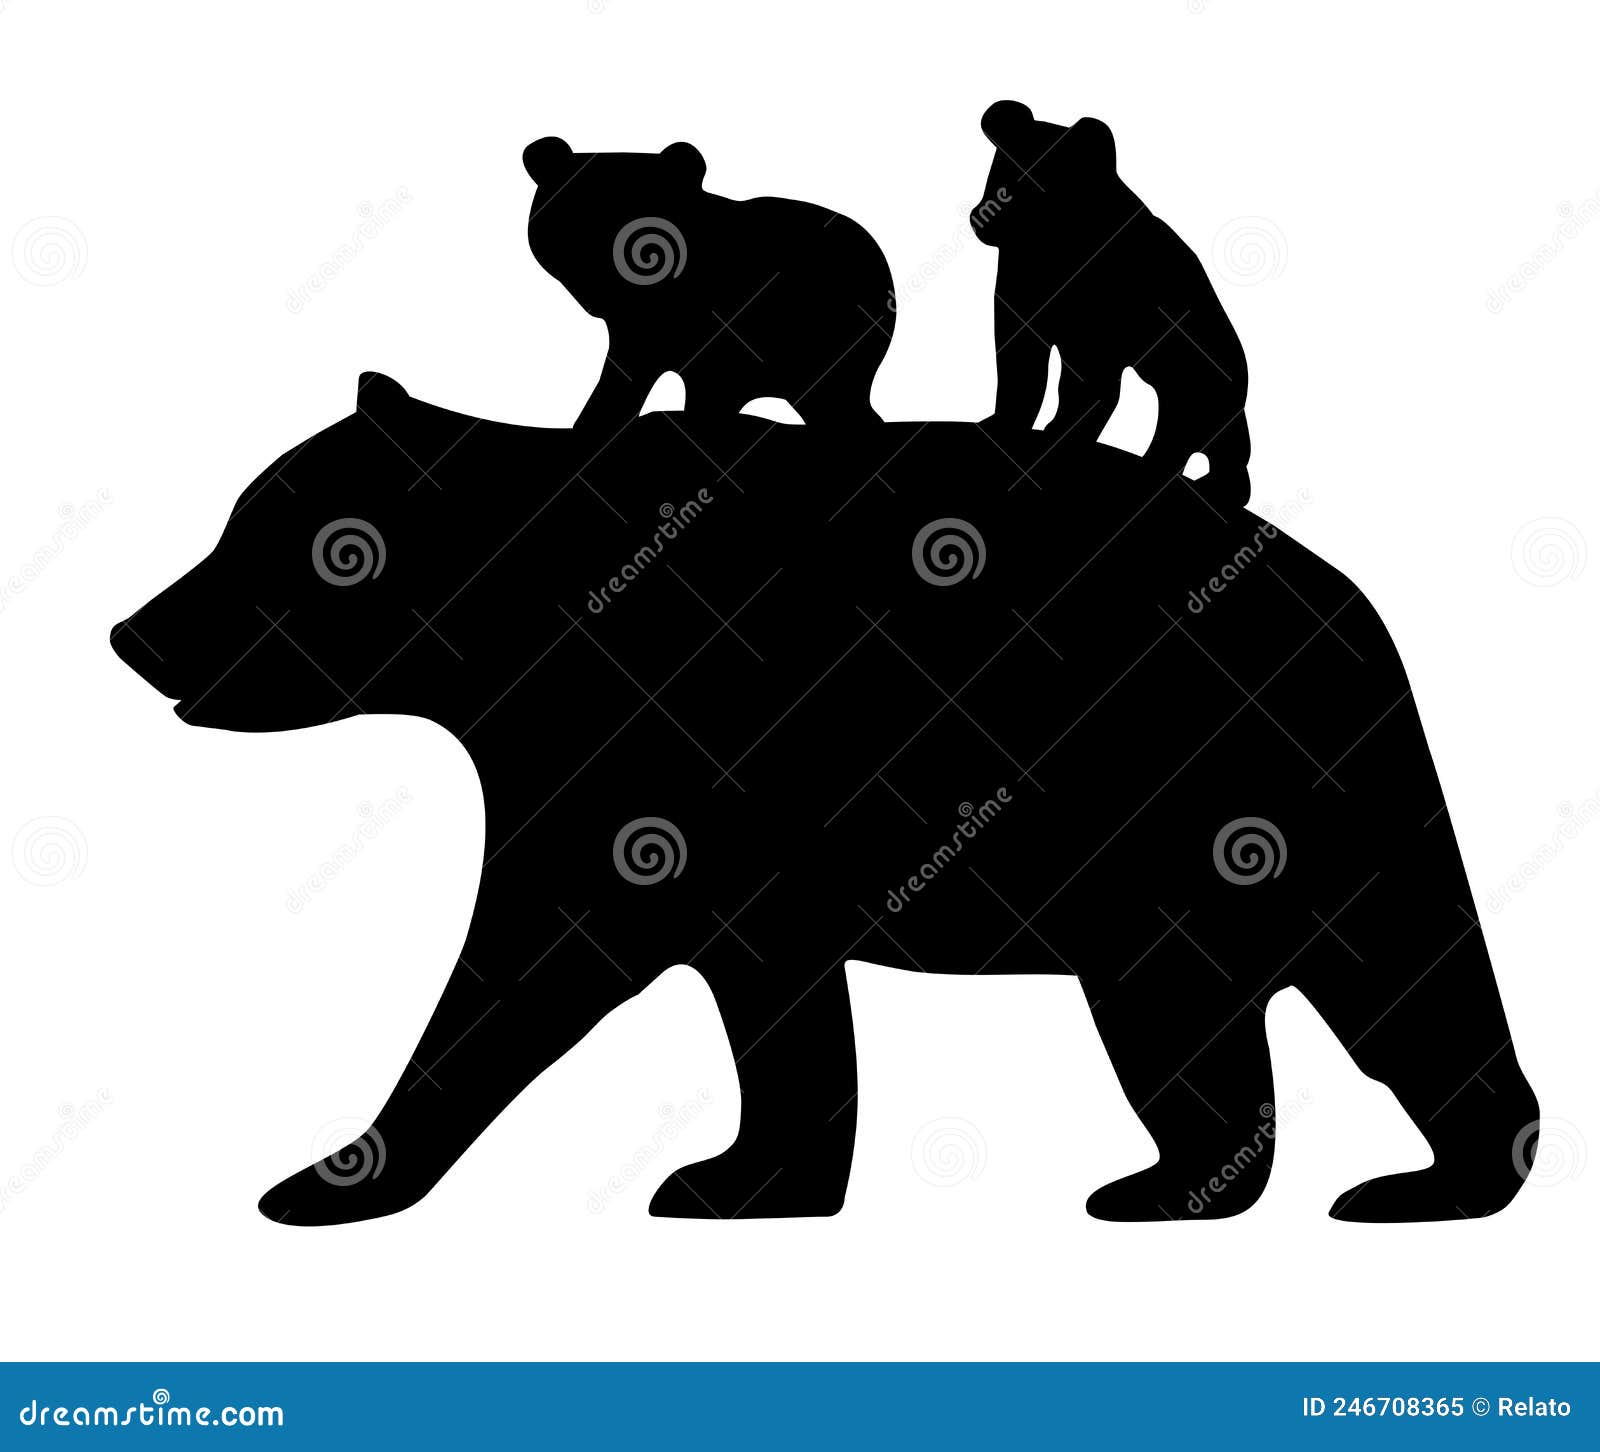  mama bear with bear cubs.